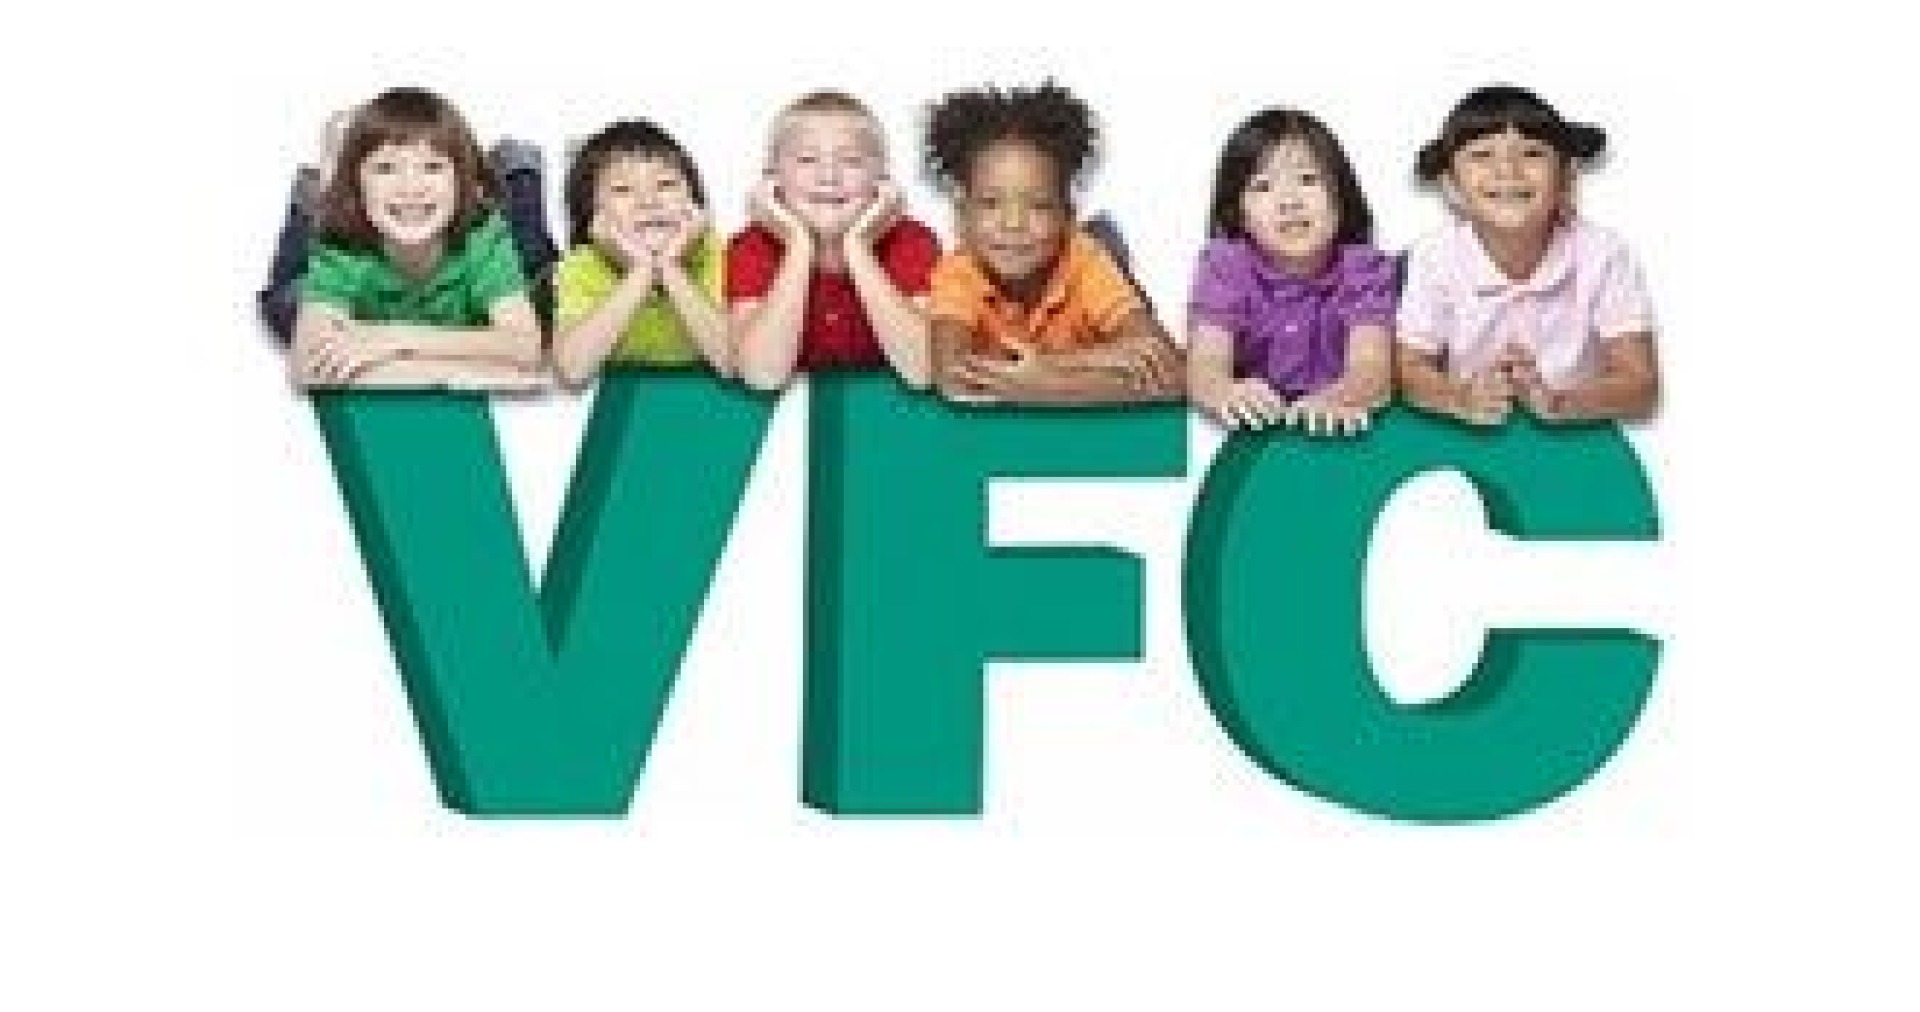 VFC Logo